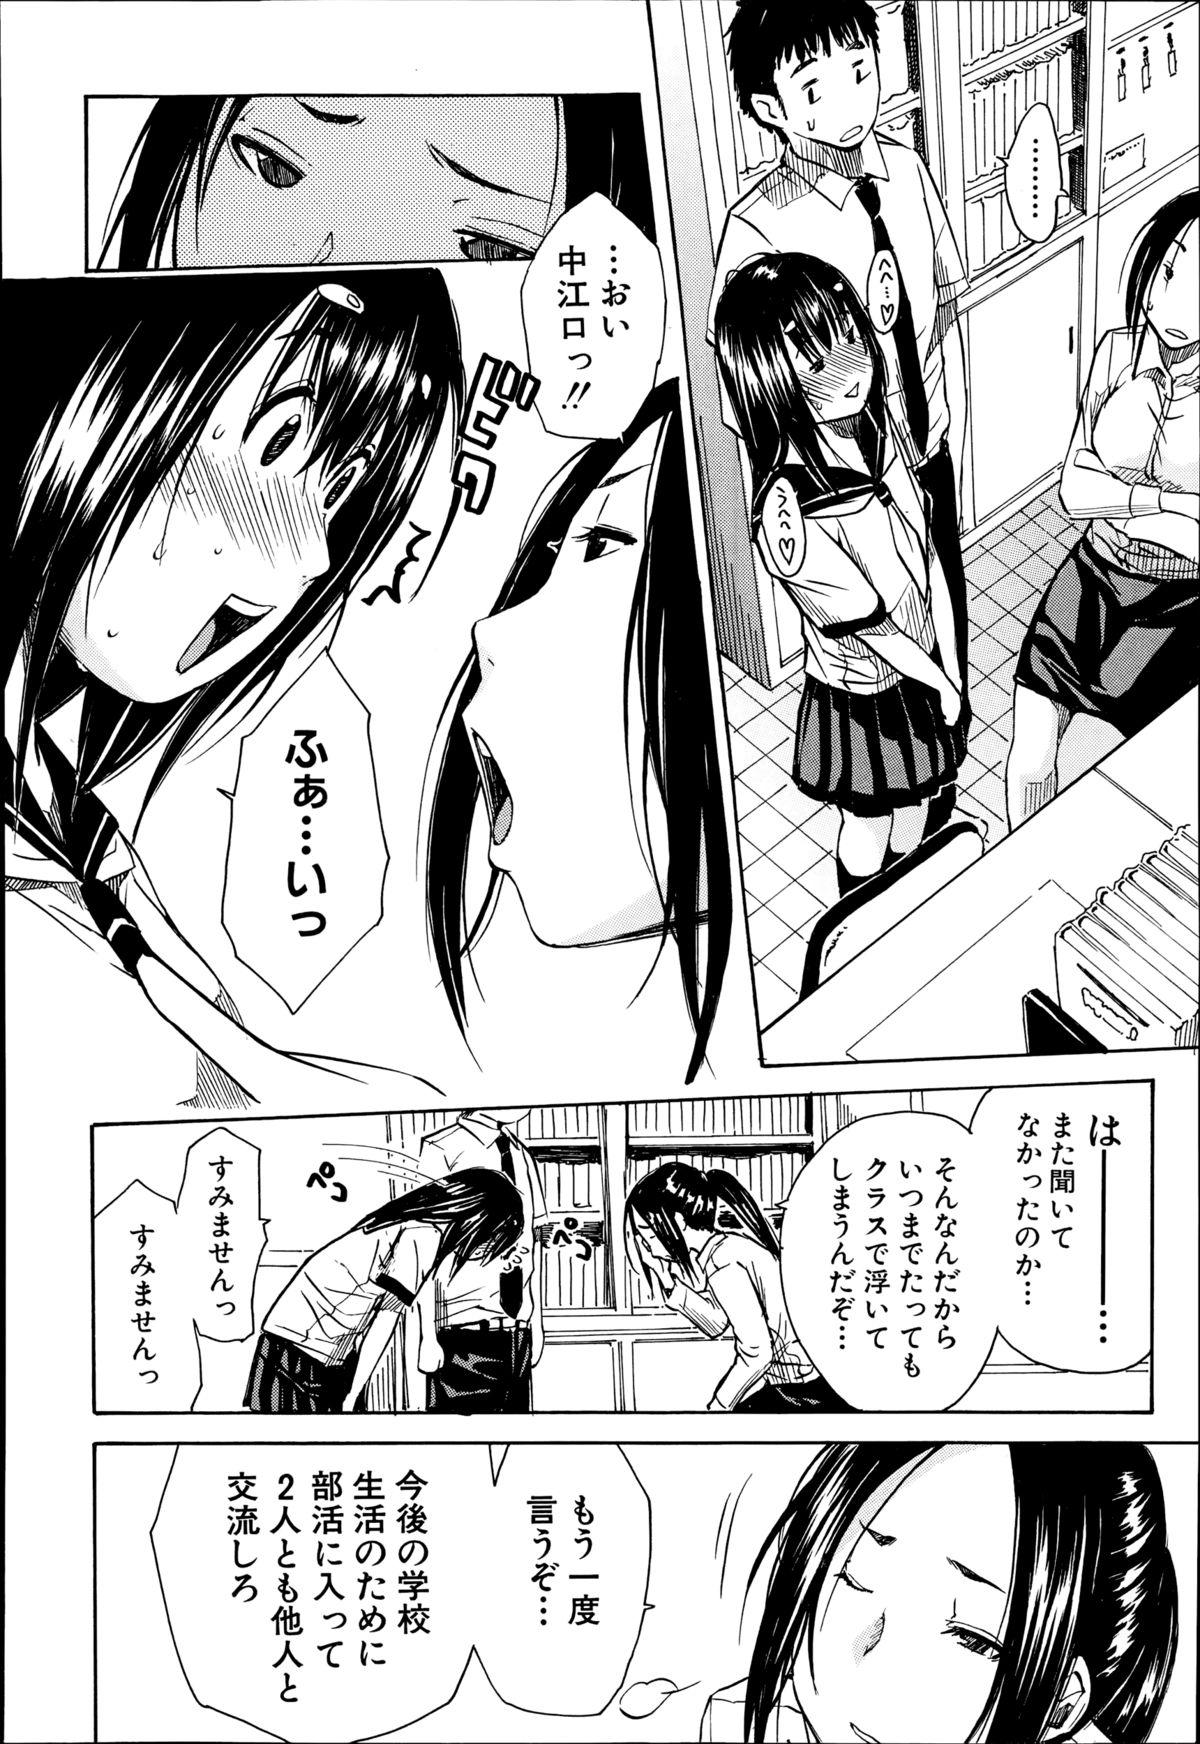 3some Atama no Naka wa Itsumo Hiwai Mosochu English - Page 8